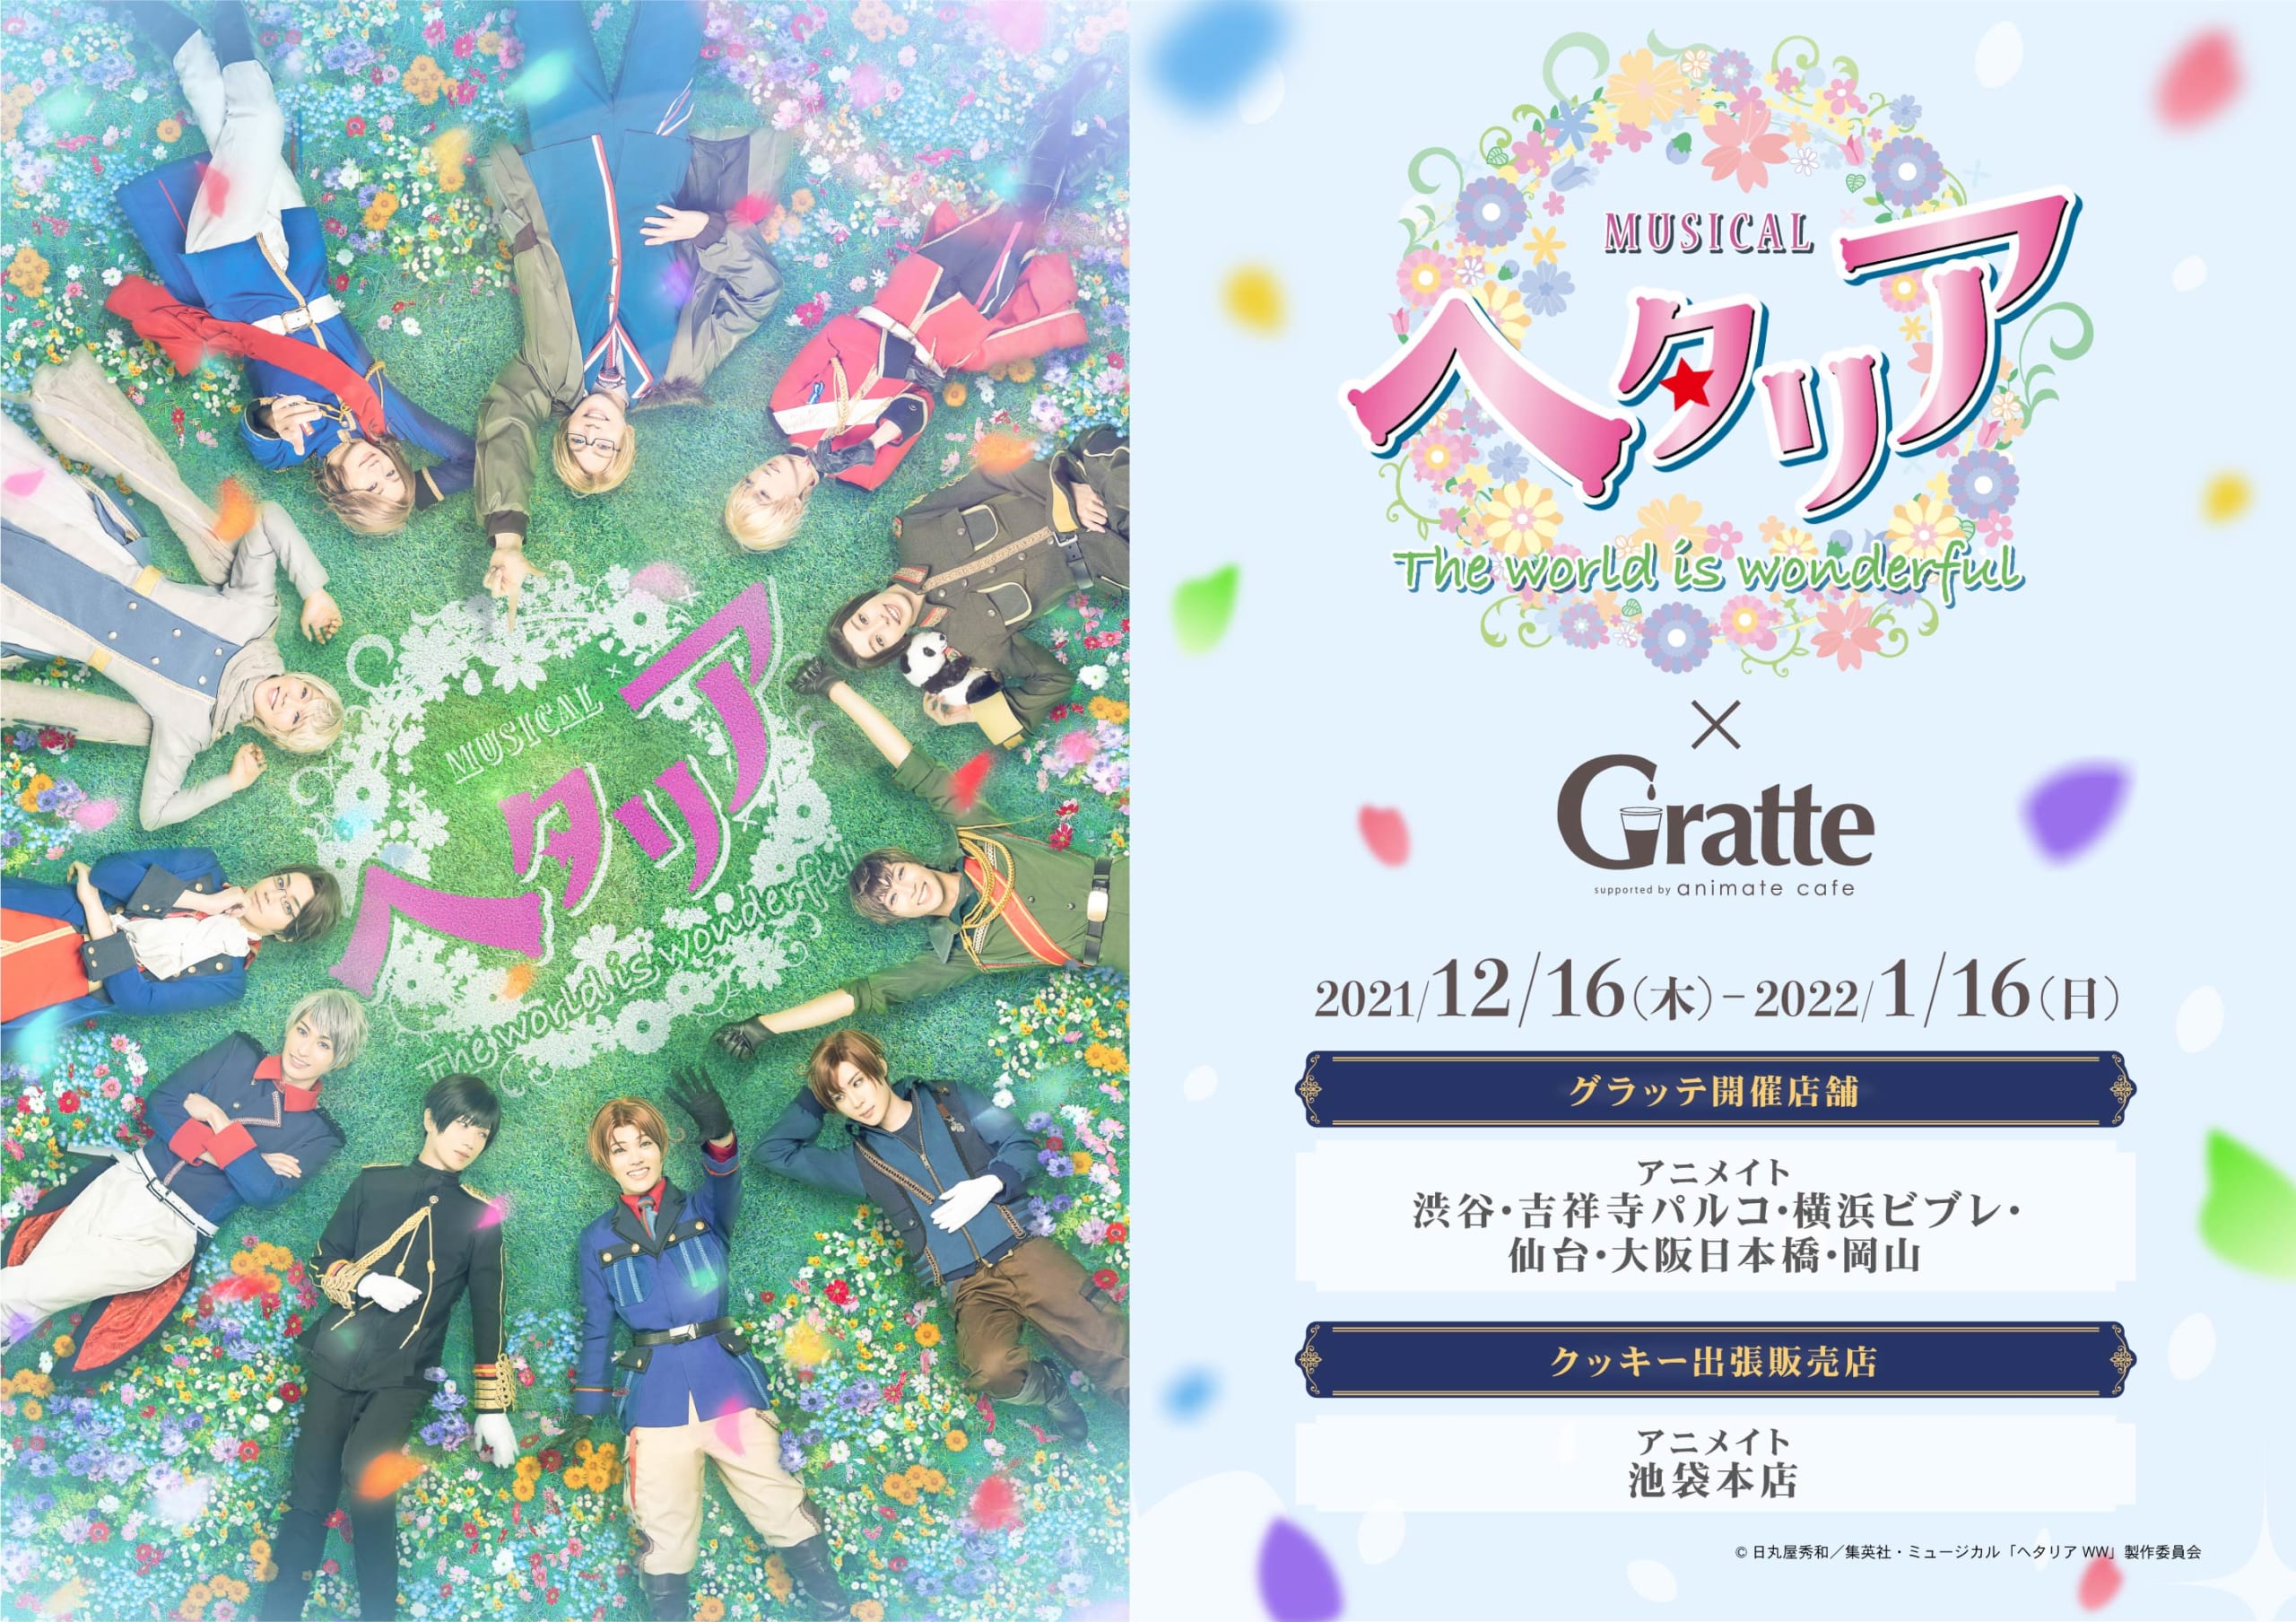 ミュージカル「ヘタリア〜The world is wonderful～」×Gratte